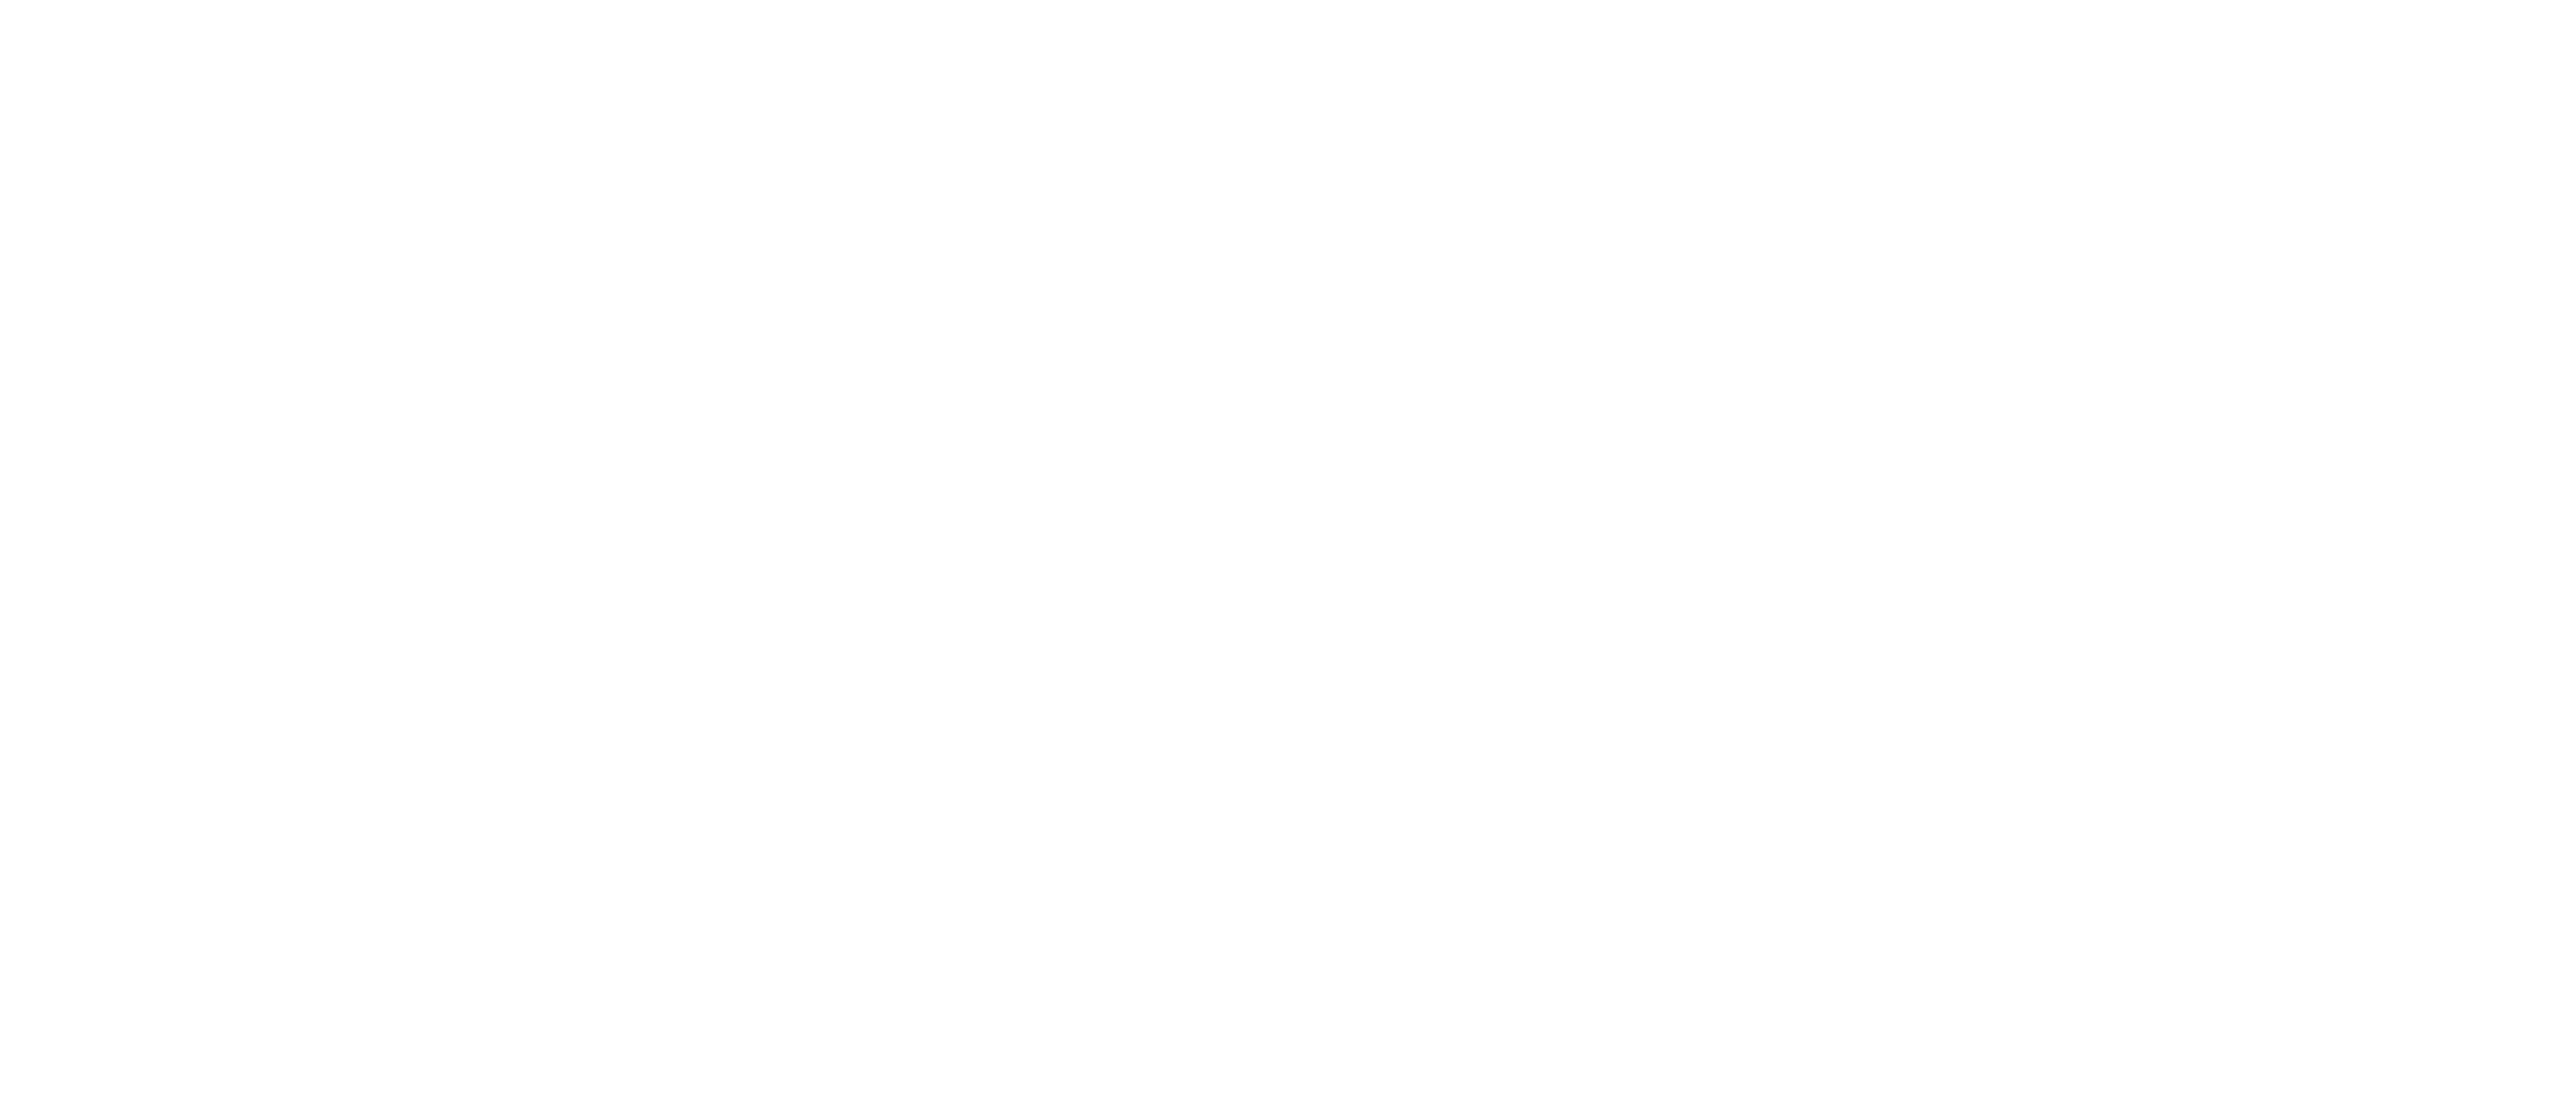 BTW_surf_center_SF-01